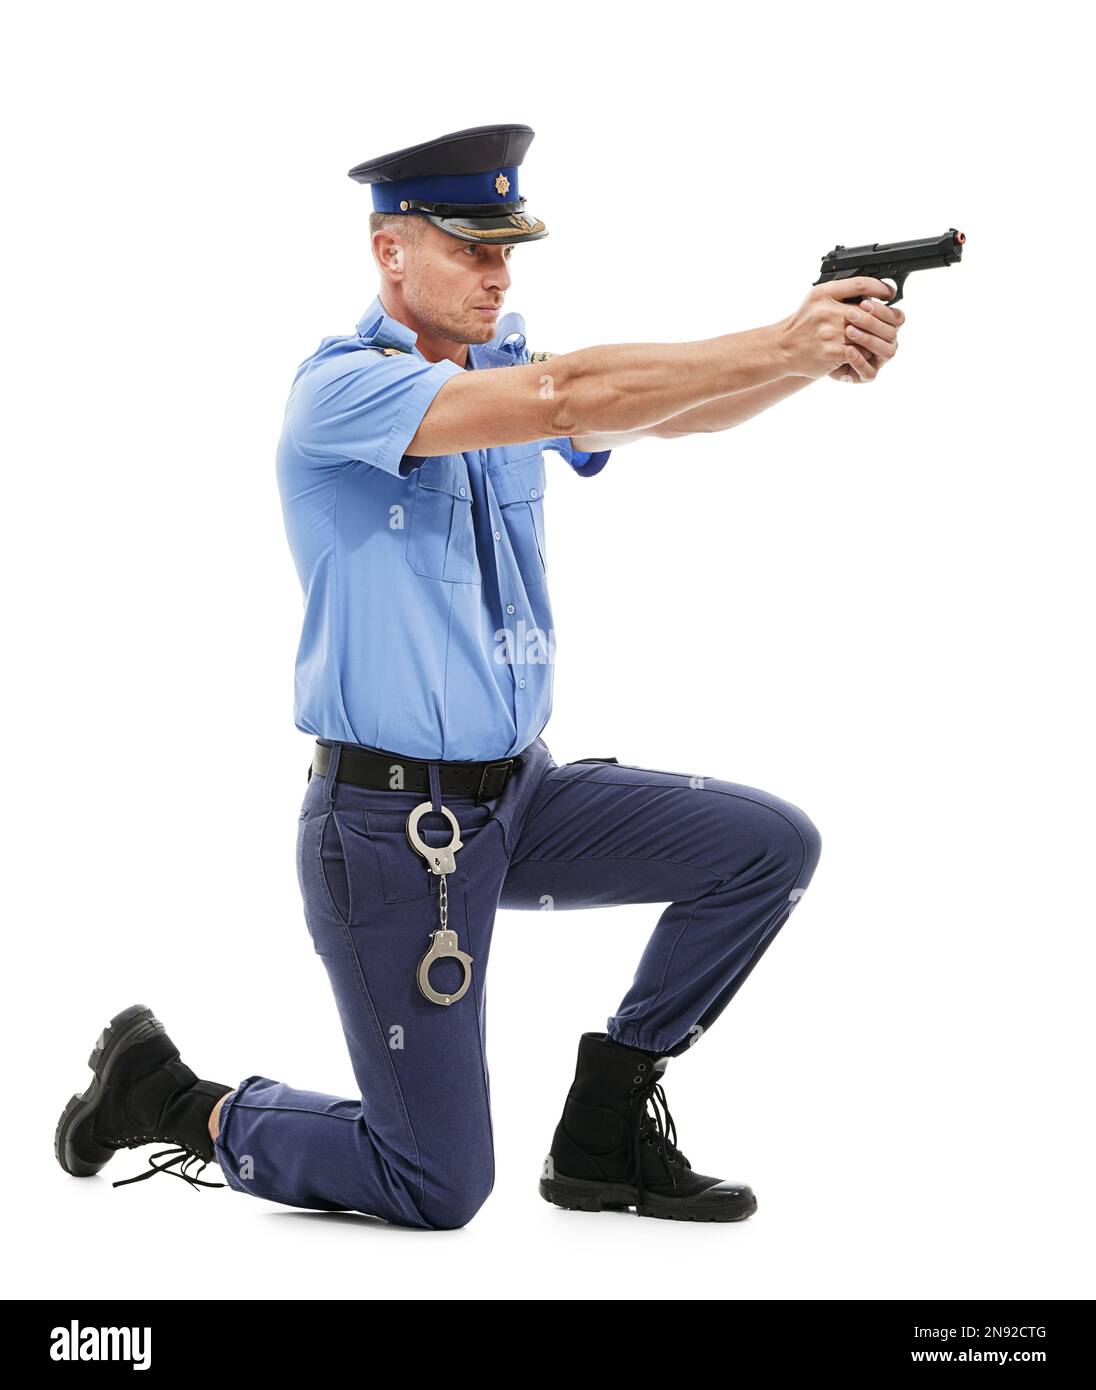 Mann, Polizist und Schießgewehr bereit, isoliert auf weißem Studiohintergrund zu schießen. Männlicher Wachmann oder Detektiv, der eine Waffe hält Stockfoto